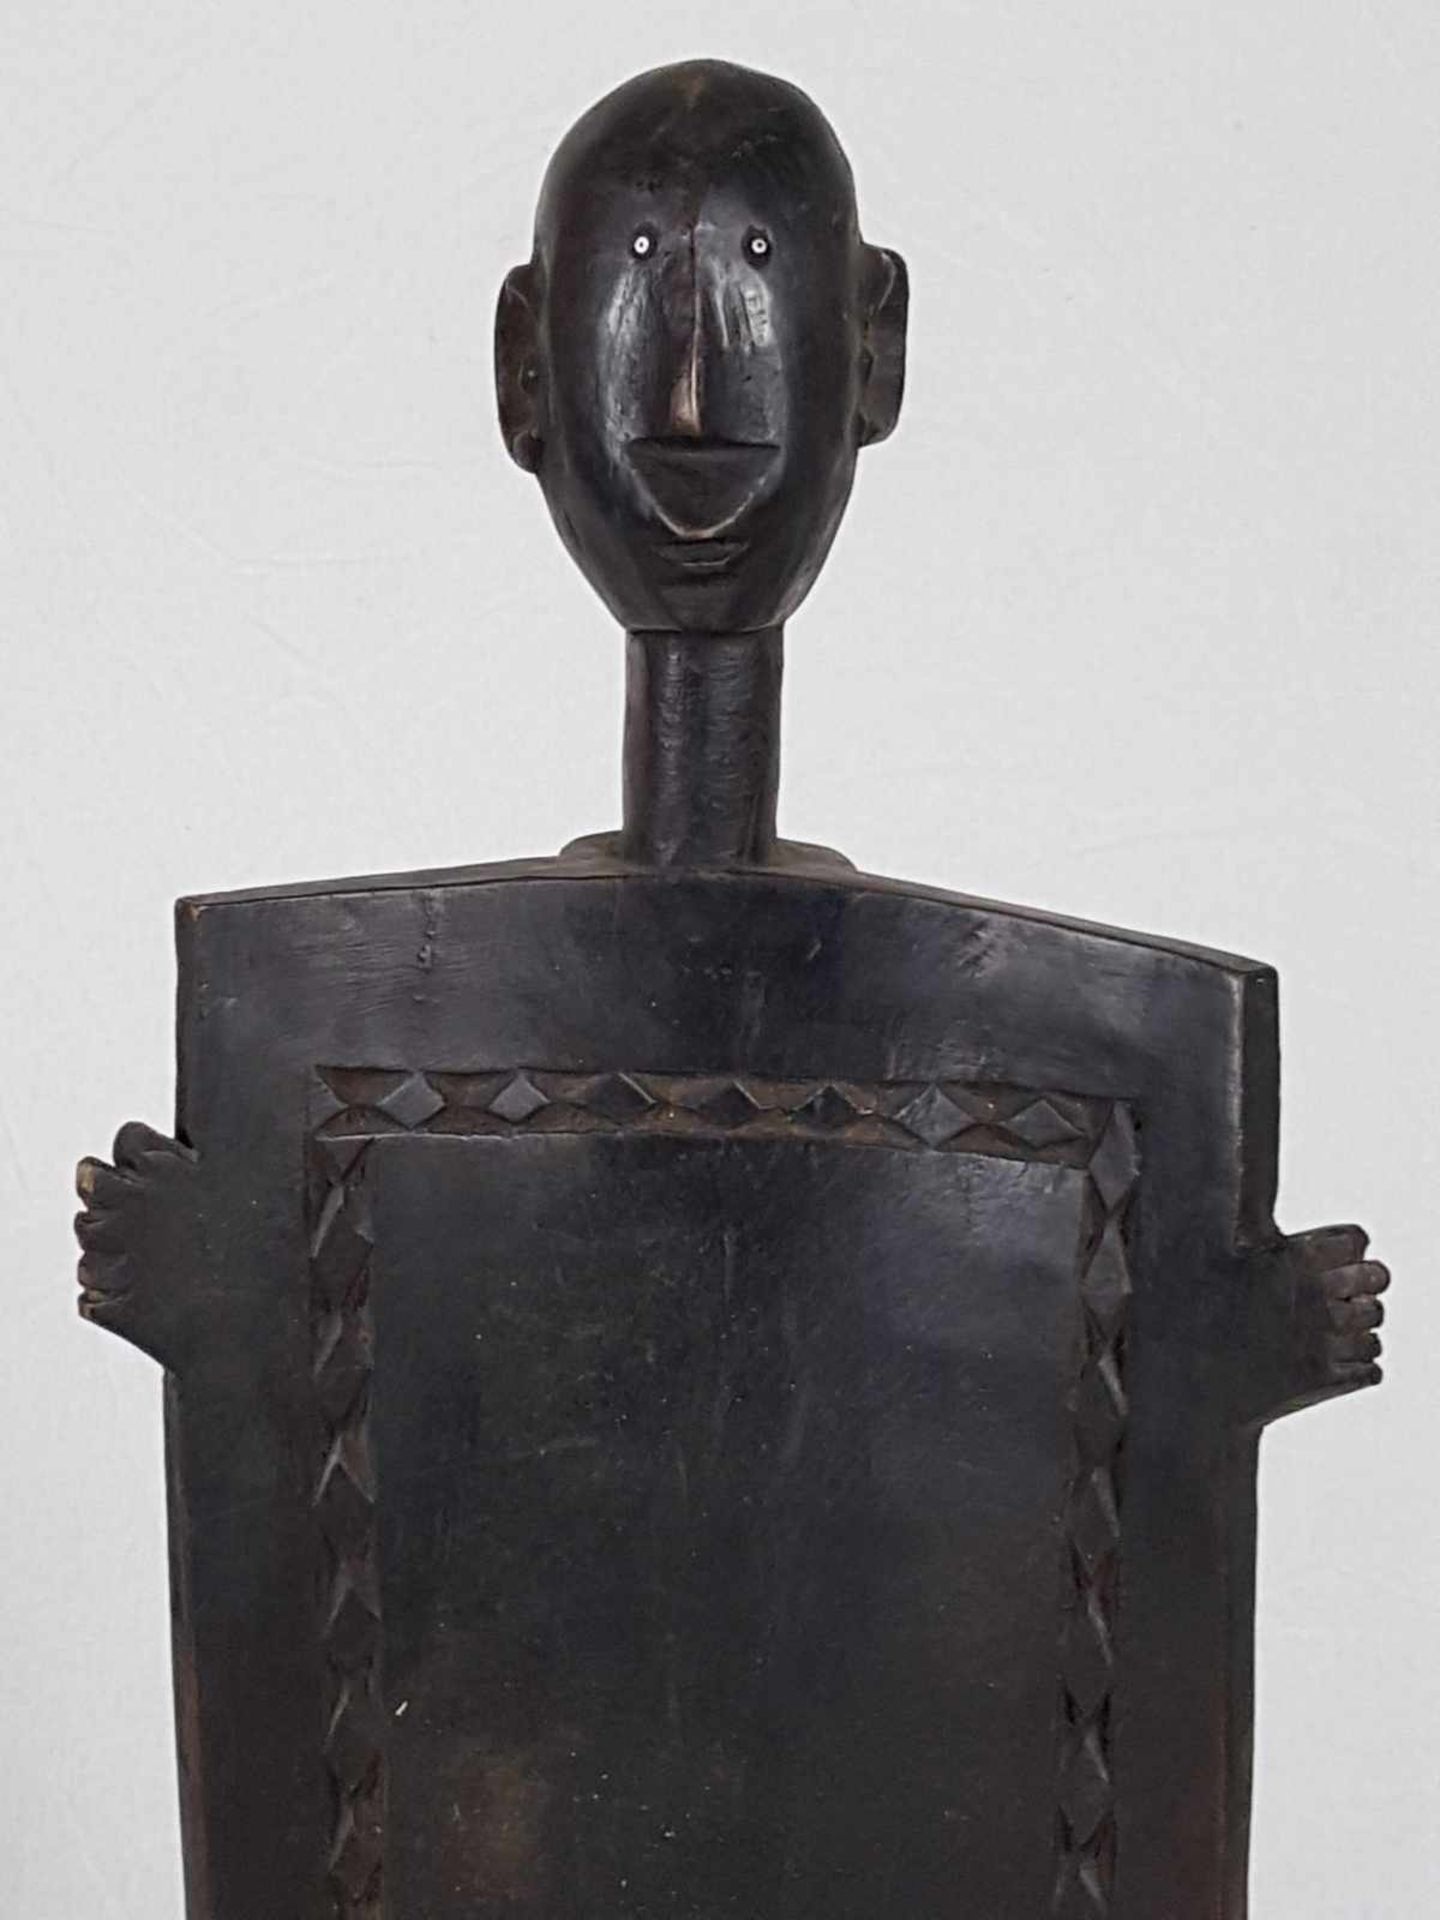 Stuhl des Imperial Chief - Ostafrika,2.Hälfte 20.Jh,Holz geschnitzt,ca.110x55cm,Gewicht ca.9kg - Bild 2 aus 5